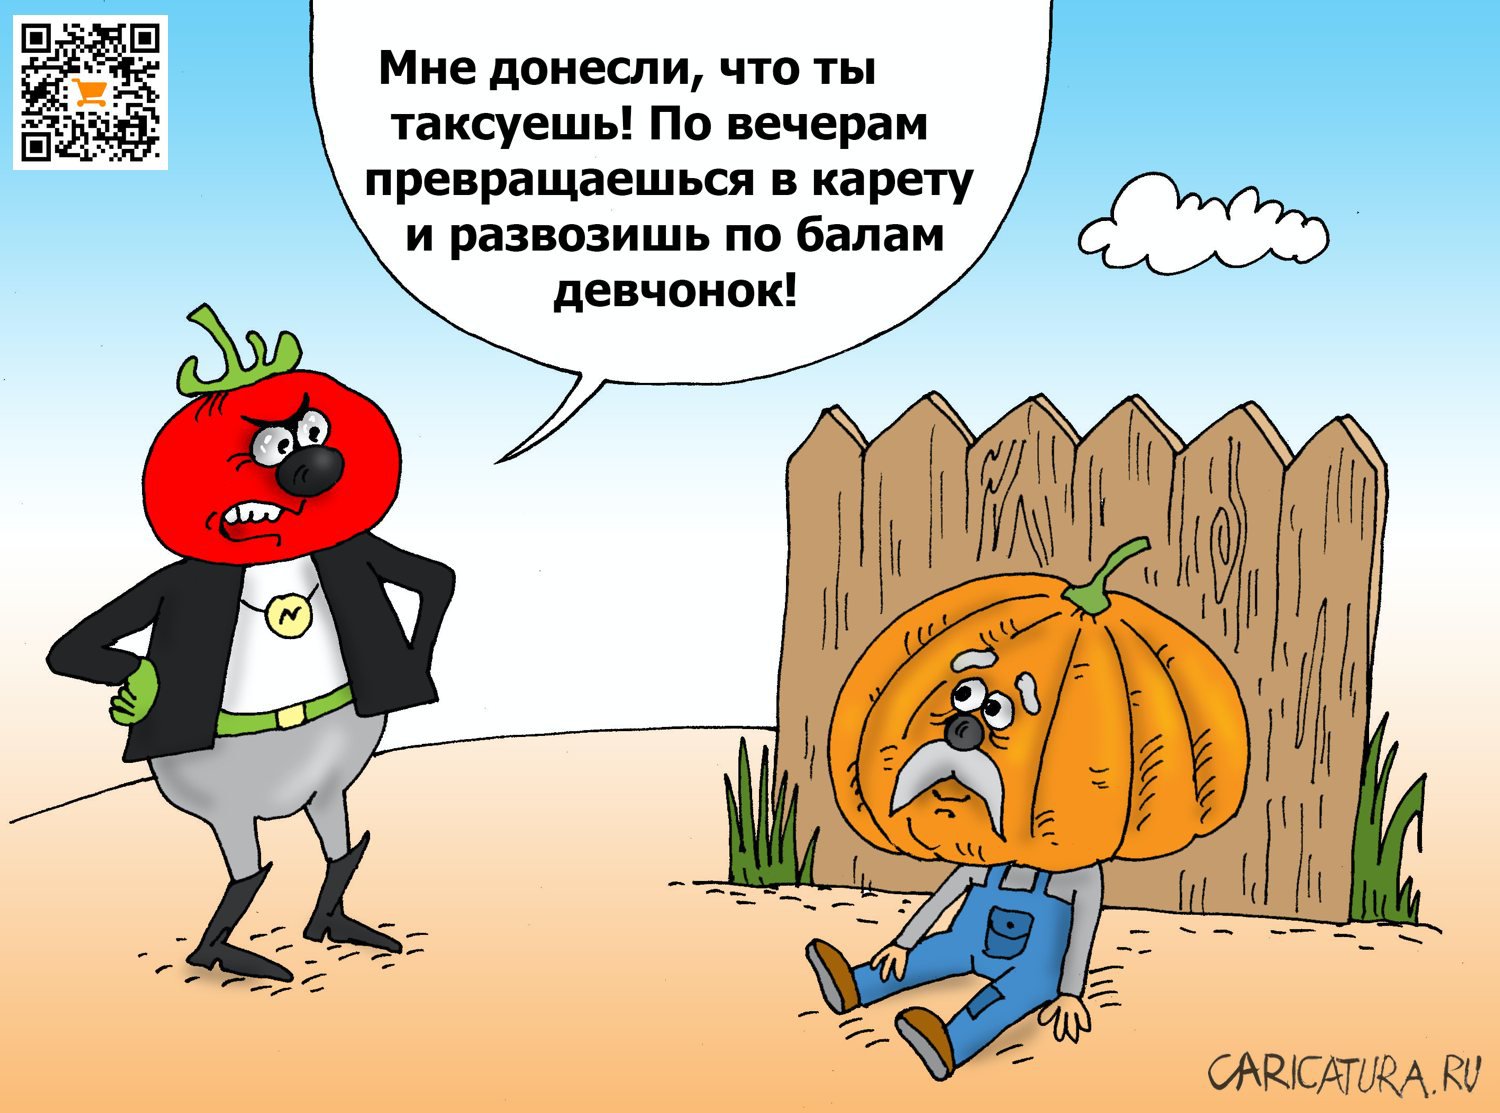 Карикатура "Рикша", Валерий Тарасенко